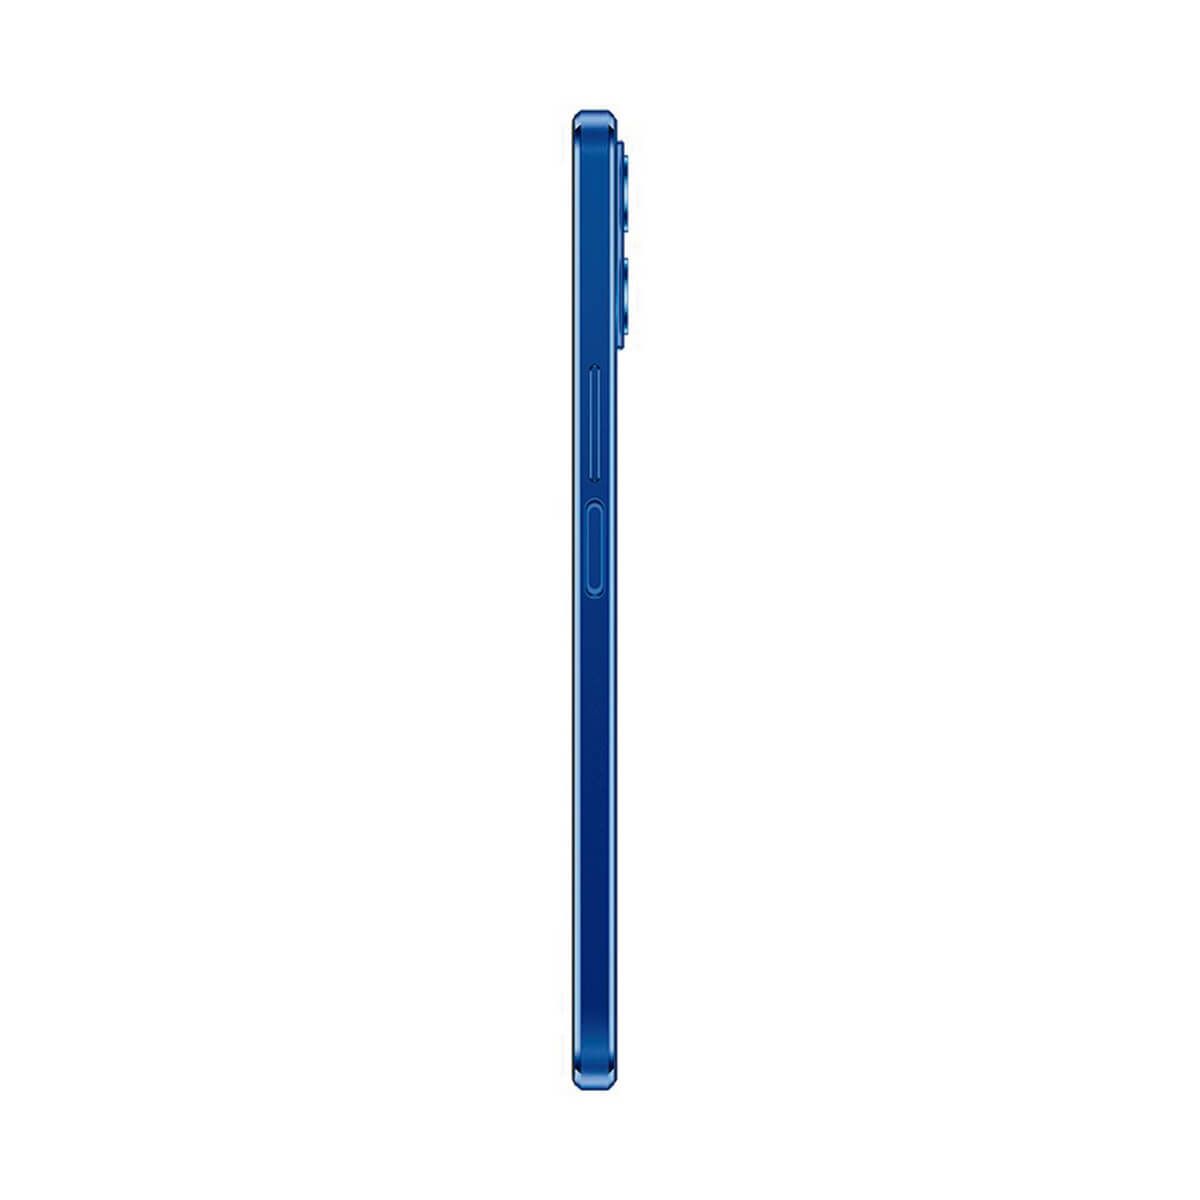 Honor X8 6GB/128GB Blue (Ocean Blue) Dual SIM TFY-LX1